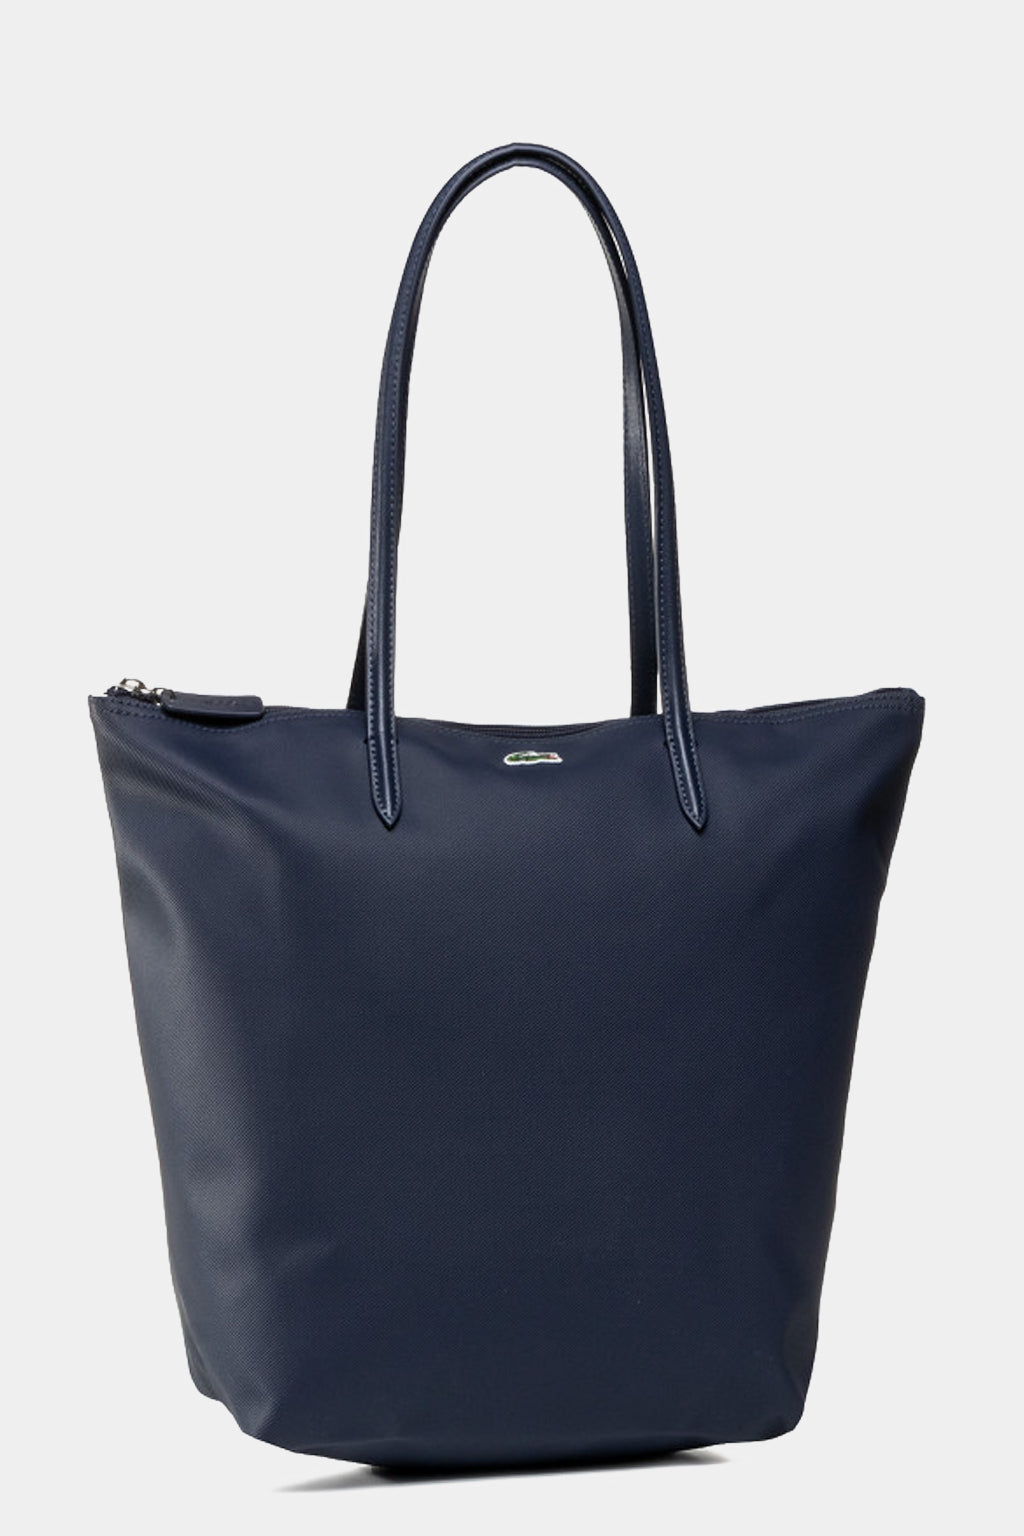 Lacoste - L.12.12 Concept Vertical Tote Bag